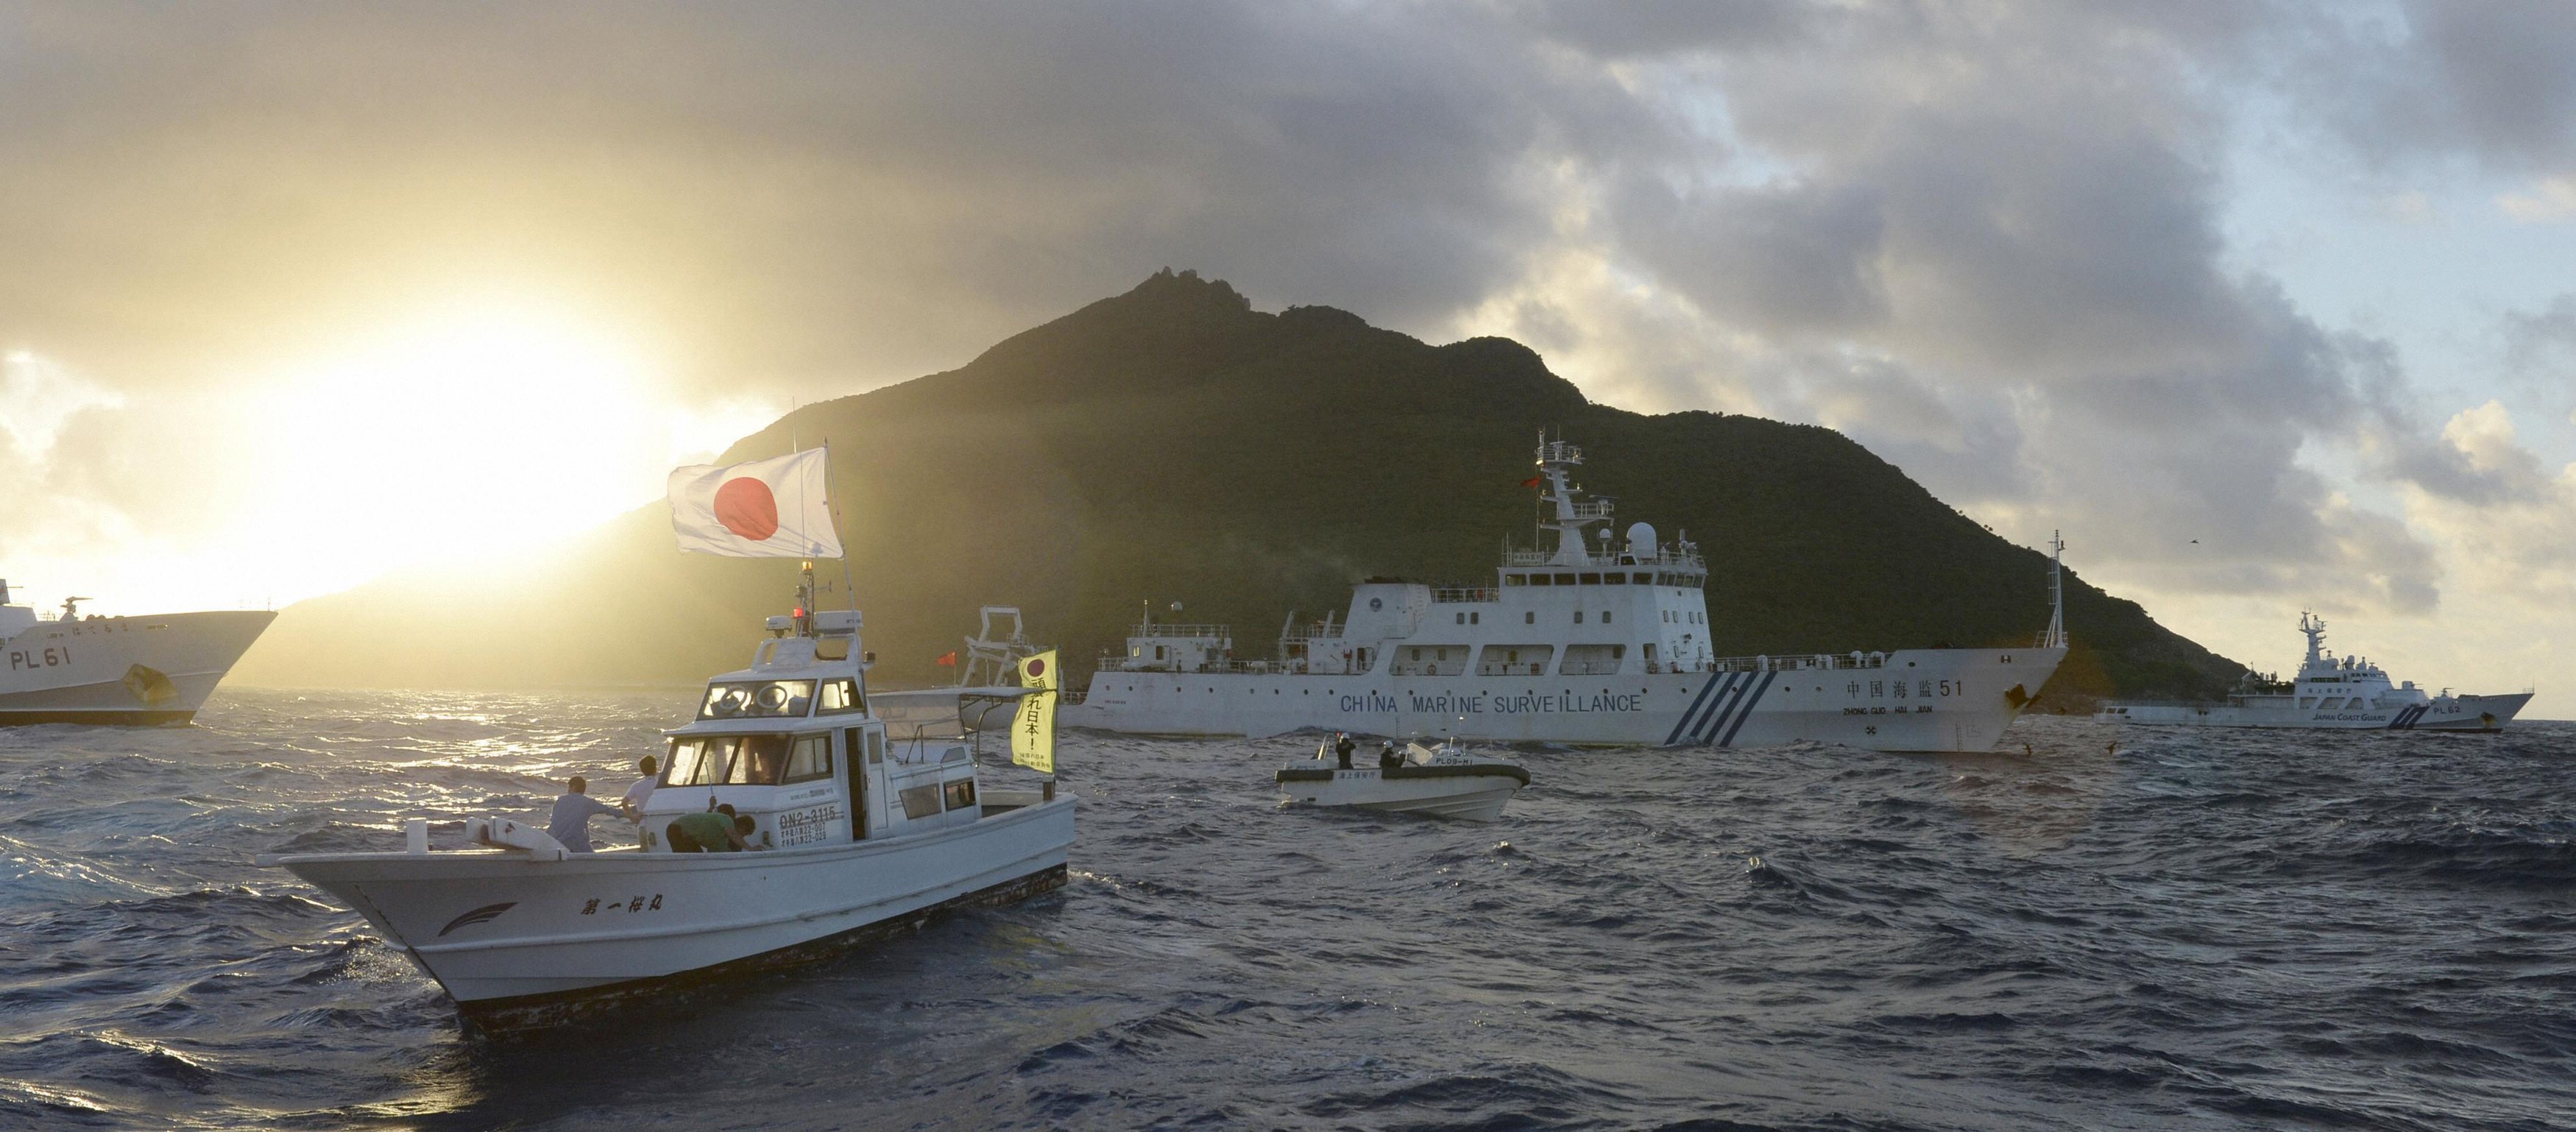 Japan says faces increasing threats from China, North Korea